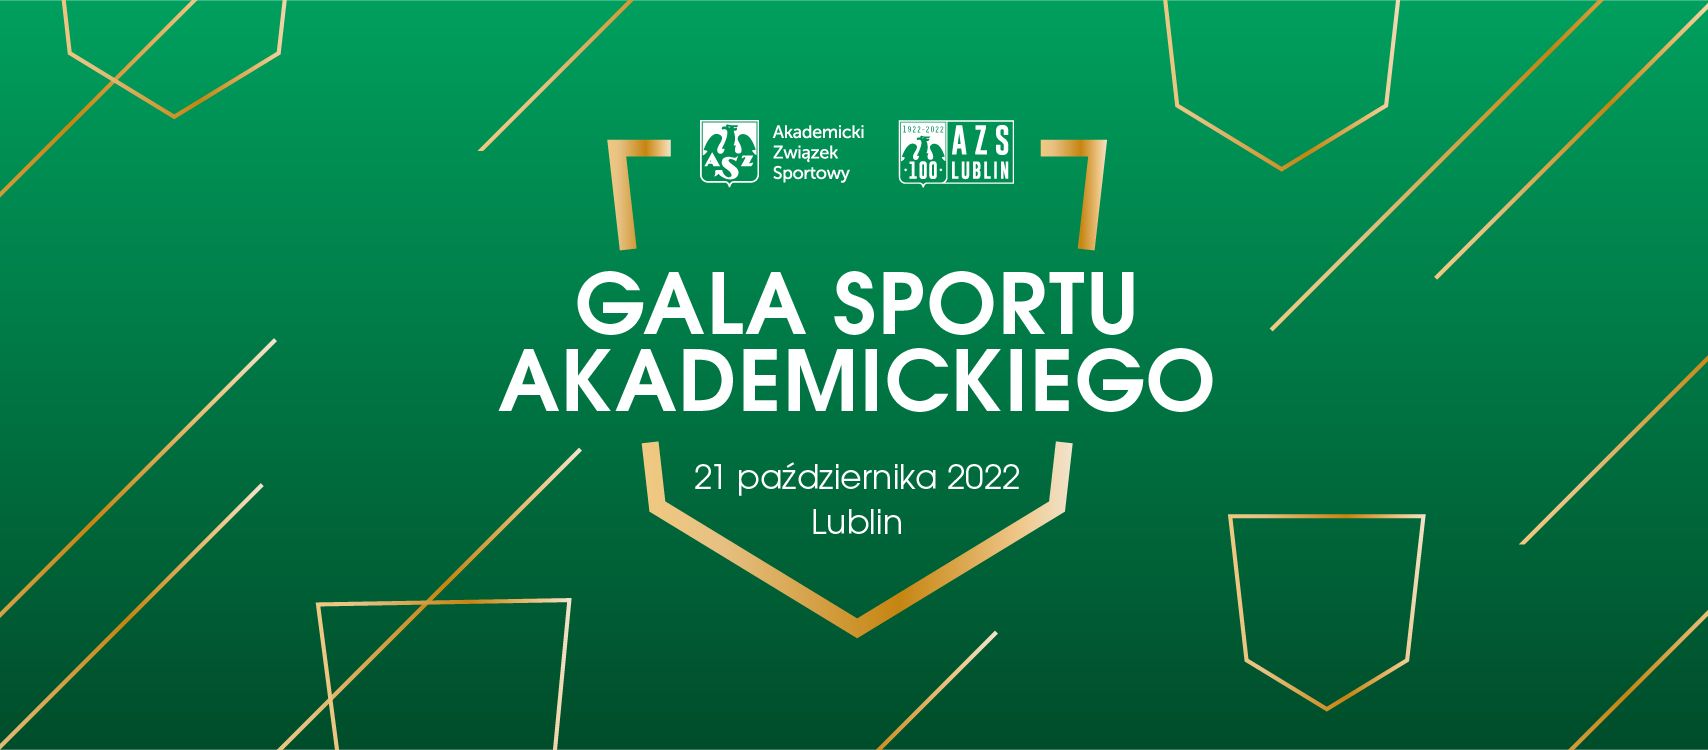 Gala Sportu Akademickiego 2022